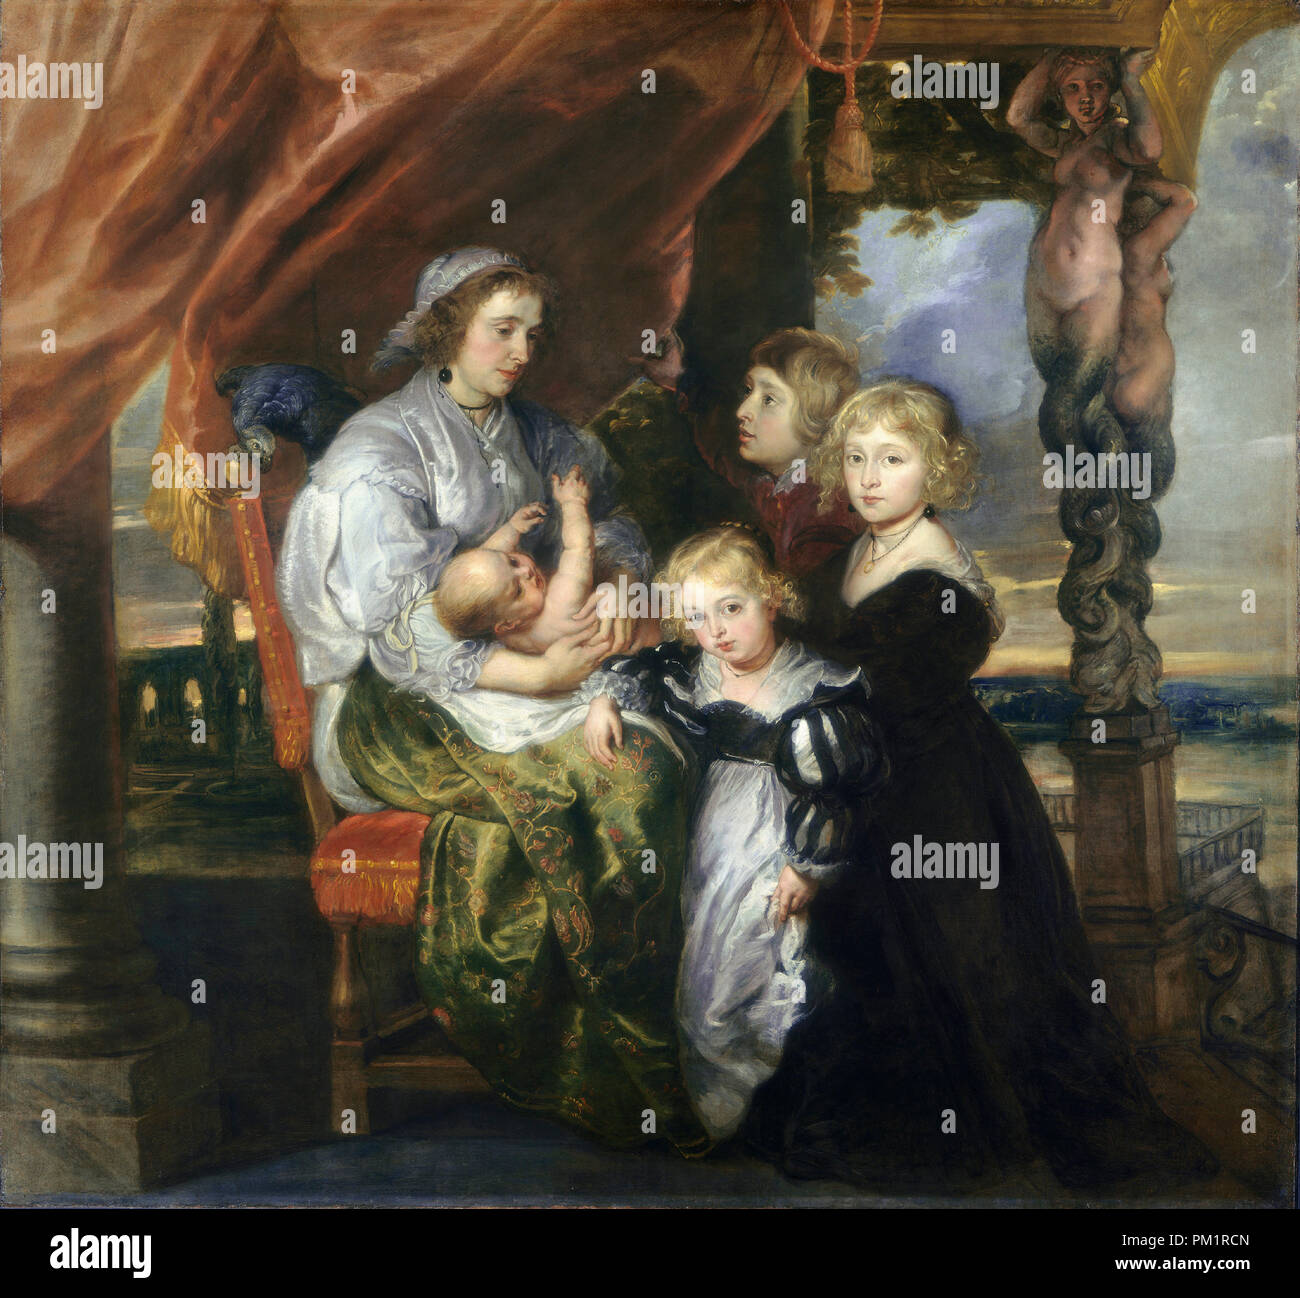 Deborah Kip, épouse de Sir Balthasar Gerbier, et ses enfants. En date du : 1629/1630, retravaillé probablement milieu années 1640. Dimensions : hors tout : 165,8 x 177,8 cm (65 1/4 x 70 in.) Encadré : 200,34 x 211,14 x 14,61 cm (78 7/8 x 83 1/8 x 5 3/4 in.). Médium : Huile sur toile. Musée : National Gallery of Art, Washington DC. Auteur : Sir Peter Paul Rubens (et peut-être Jacob Jordaens). Banque D'Images